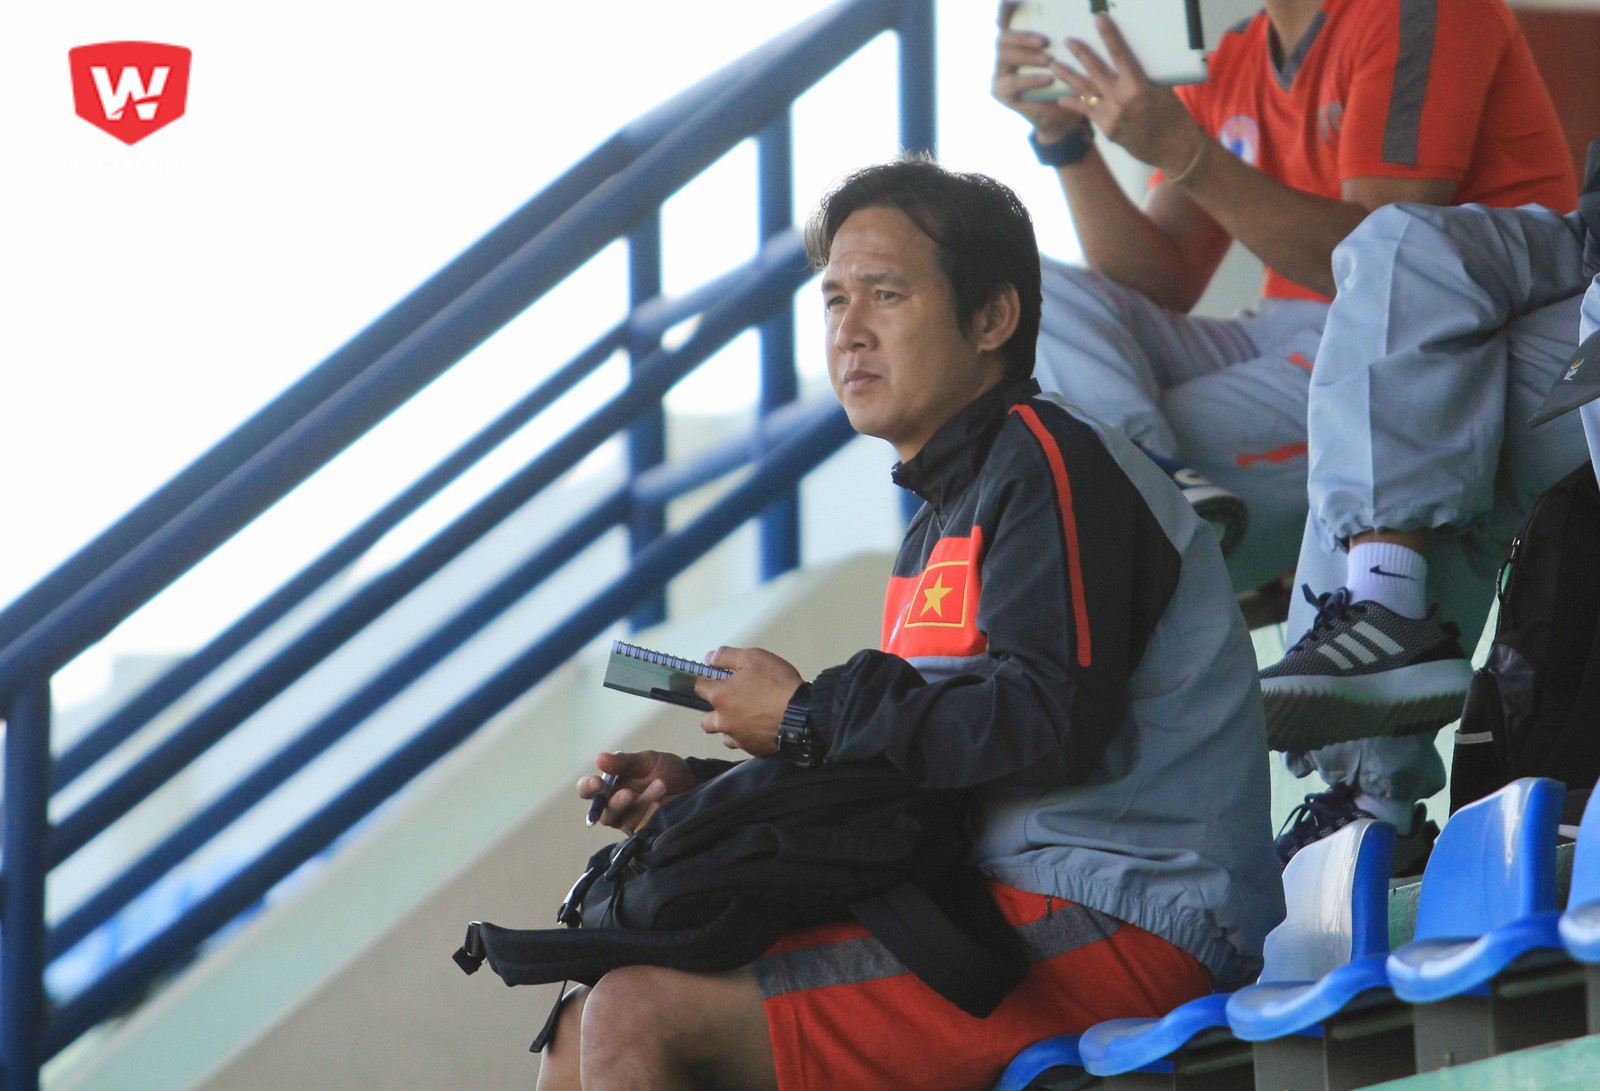 HLV Minh Phương ngồi một mình. Ông vừa trải qua kỷ niệm không mấy vui vẻ khi không thể giúp Long An trụ hạng thành công tại V.League. Ảnh: Trung Thu.